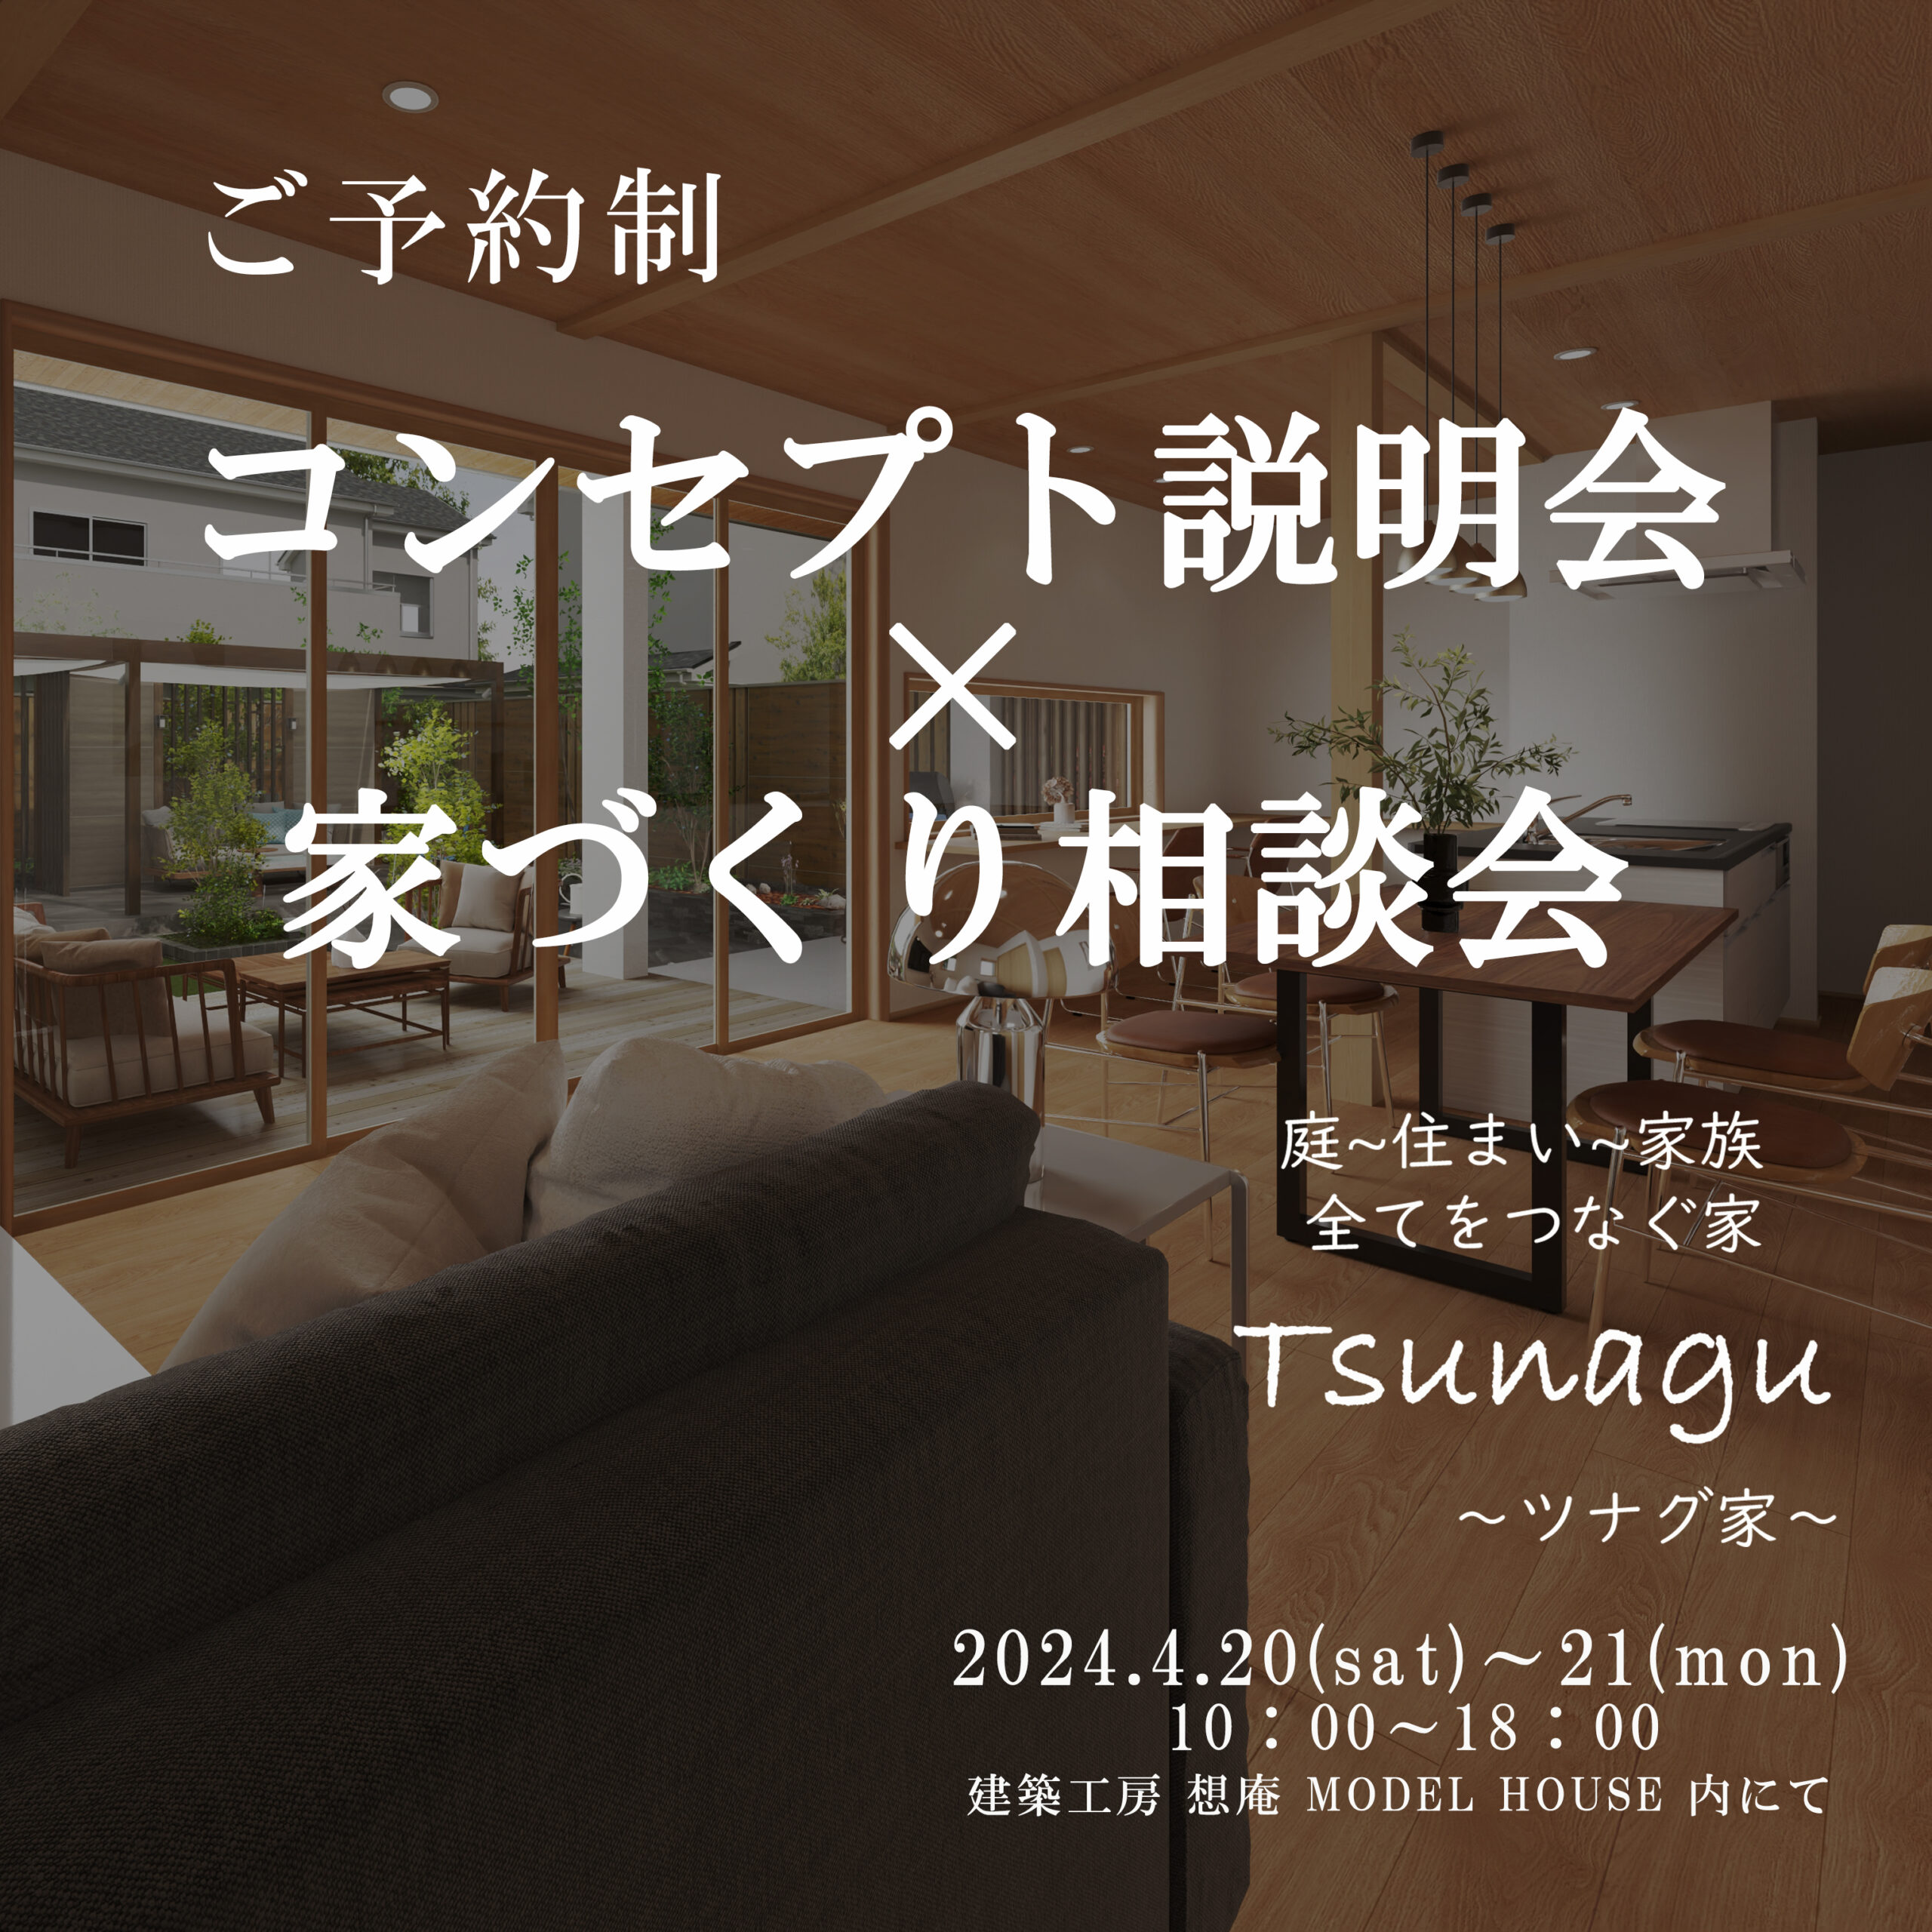 24.4.20・21 庭と住まいと家族 Tsunagu~ツナグ家~ コンセプト説明会・家づくり相談会 開催‼